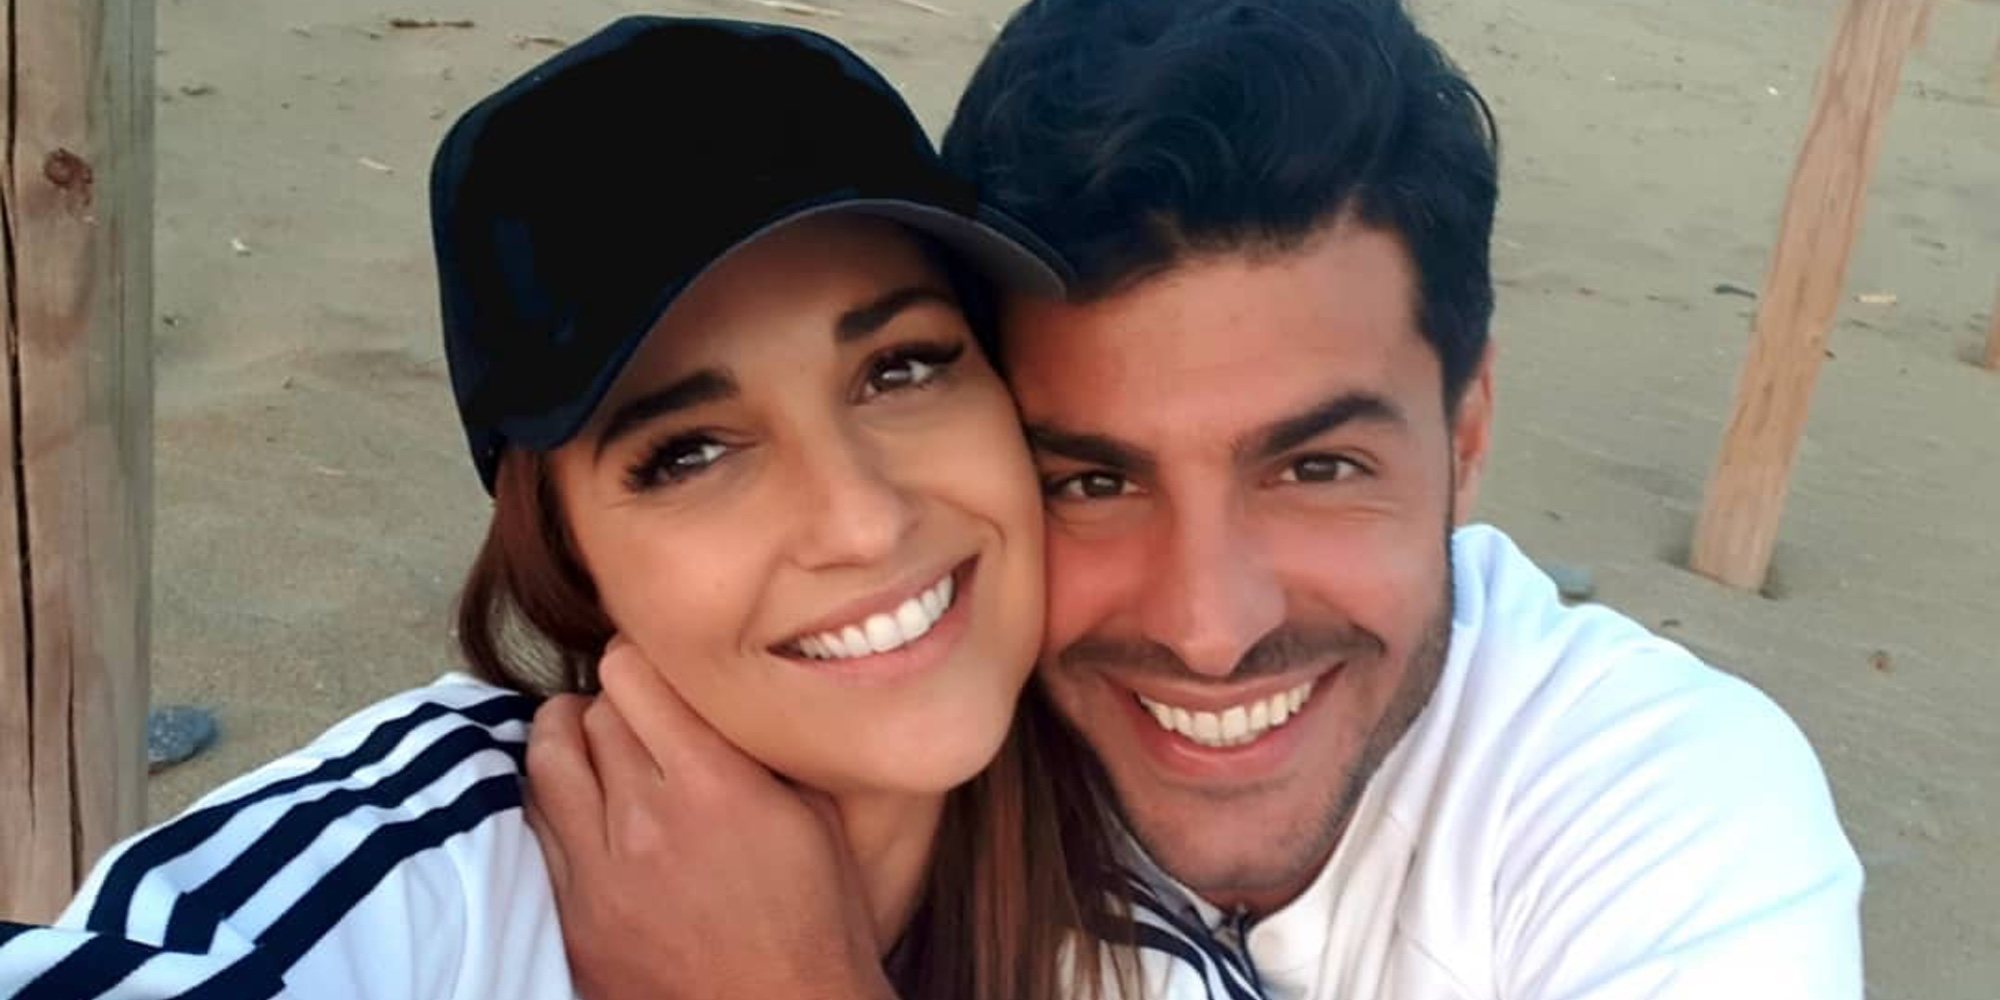 Paula Echevarría y Miguel Torres derrochan amor en Marbella